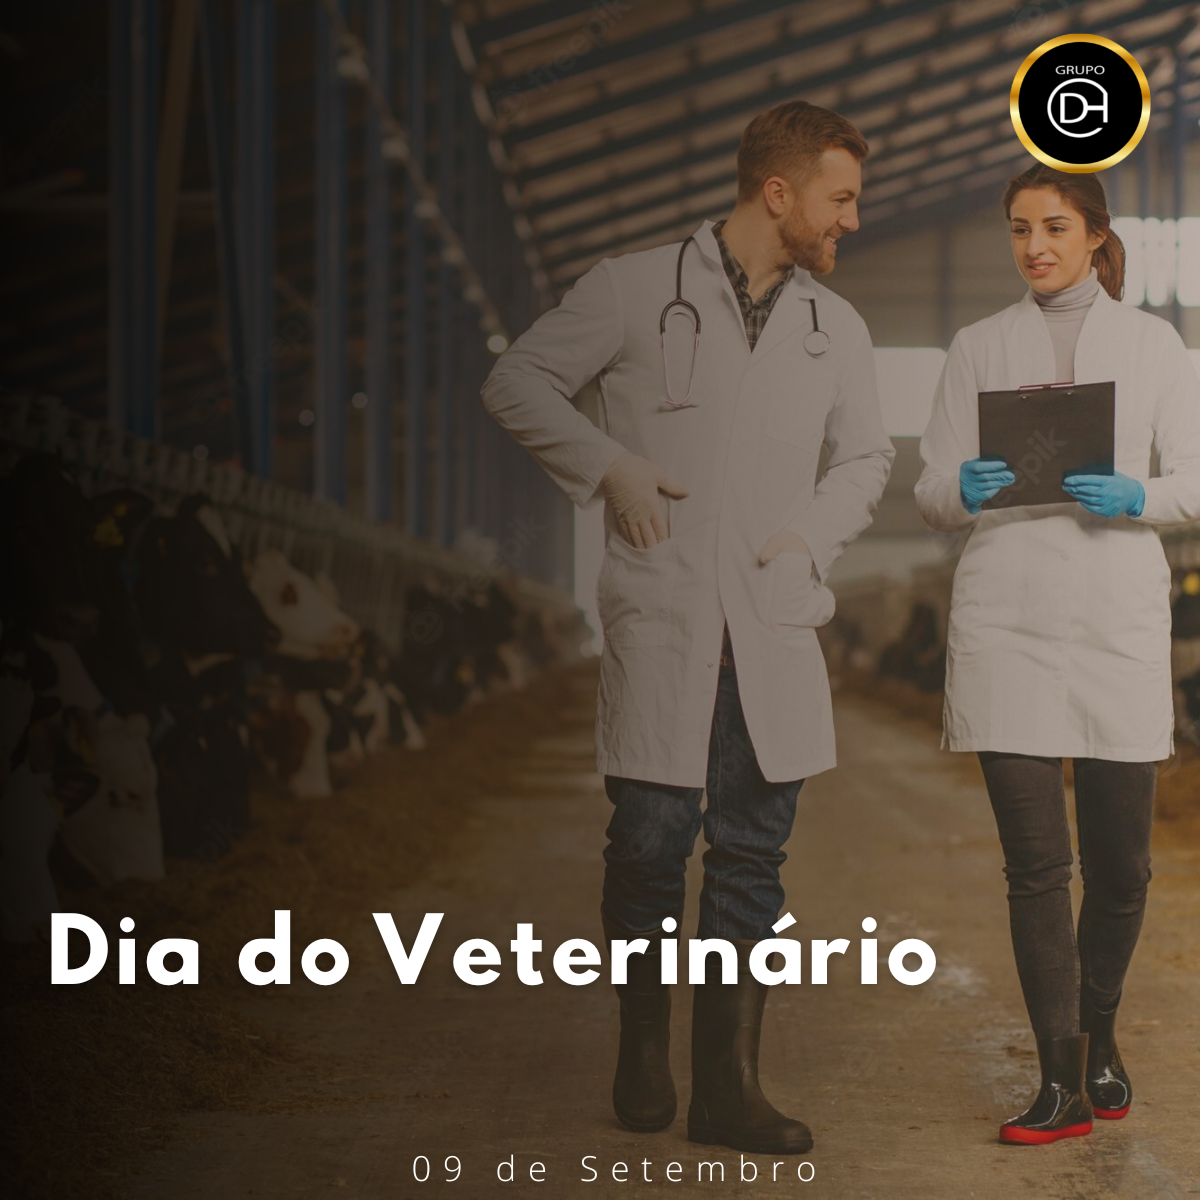 Ser veterinário é cuidar da saúde dos animais e sobretudo amá-los.